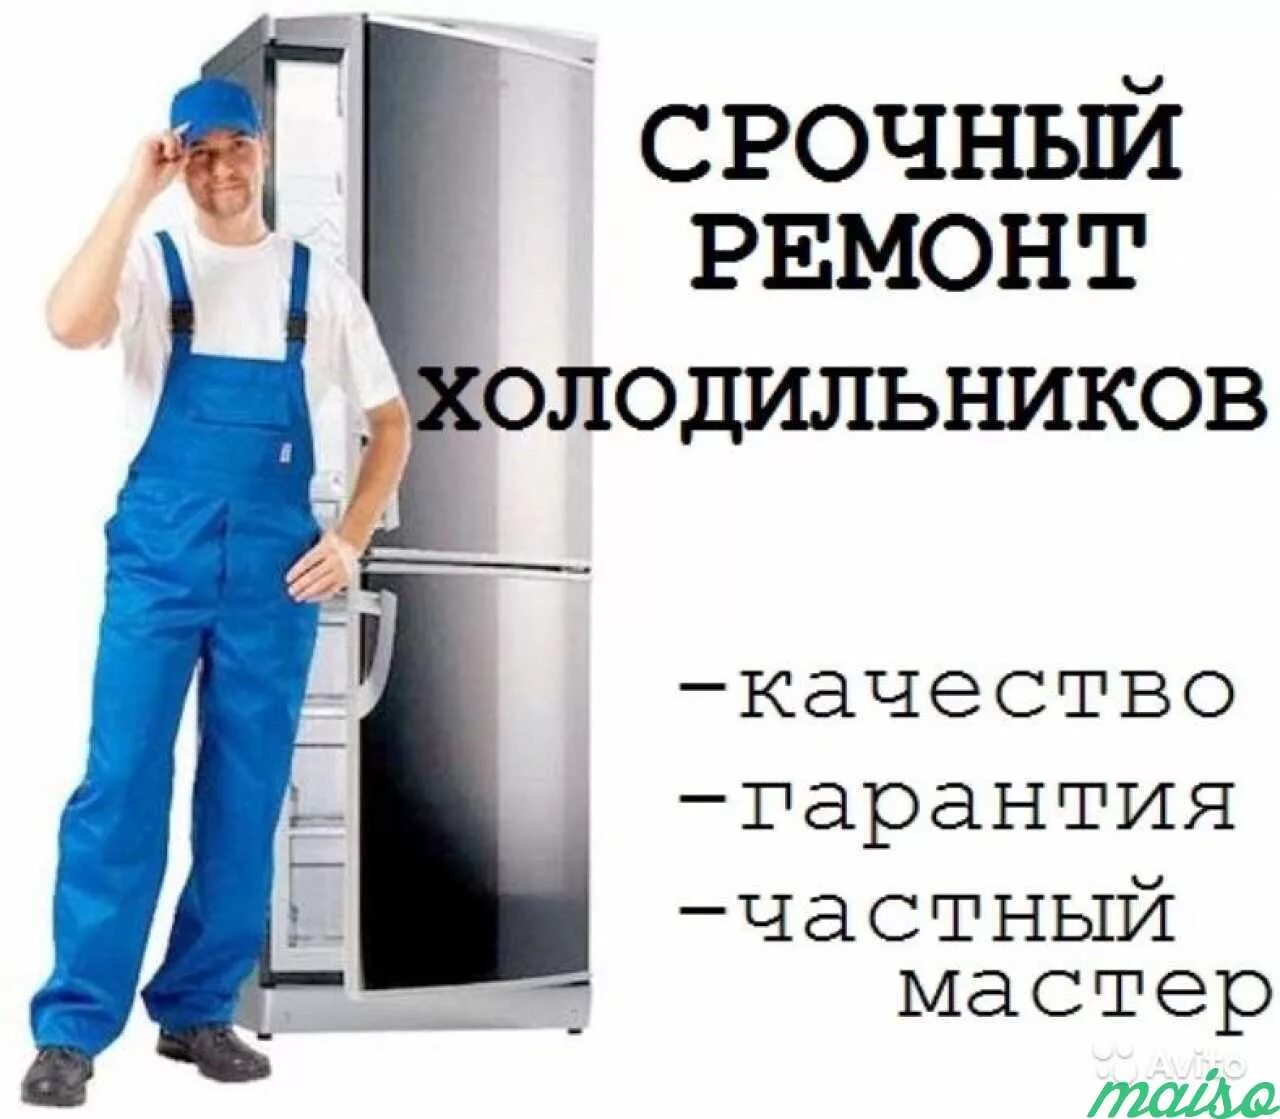 Мастер холодильников. Ремонт холодильников реклама. Мастер по ремонту холодильников. Ремонт холодильников частный мастер недорого